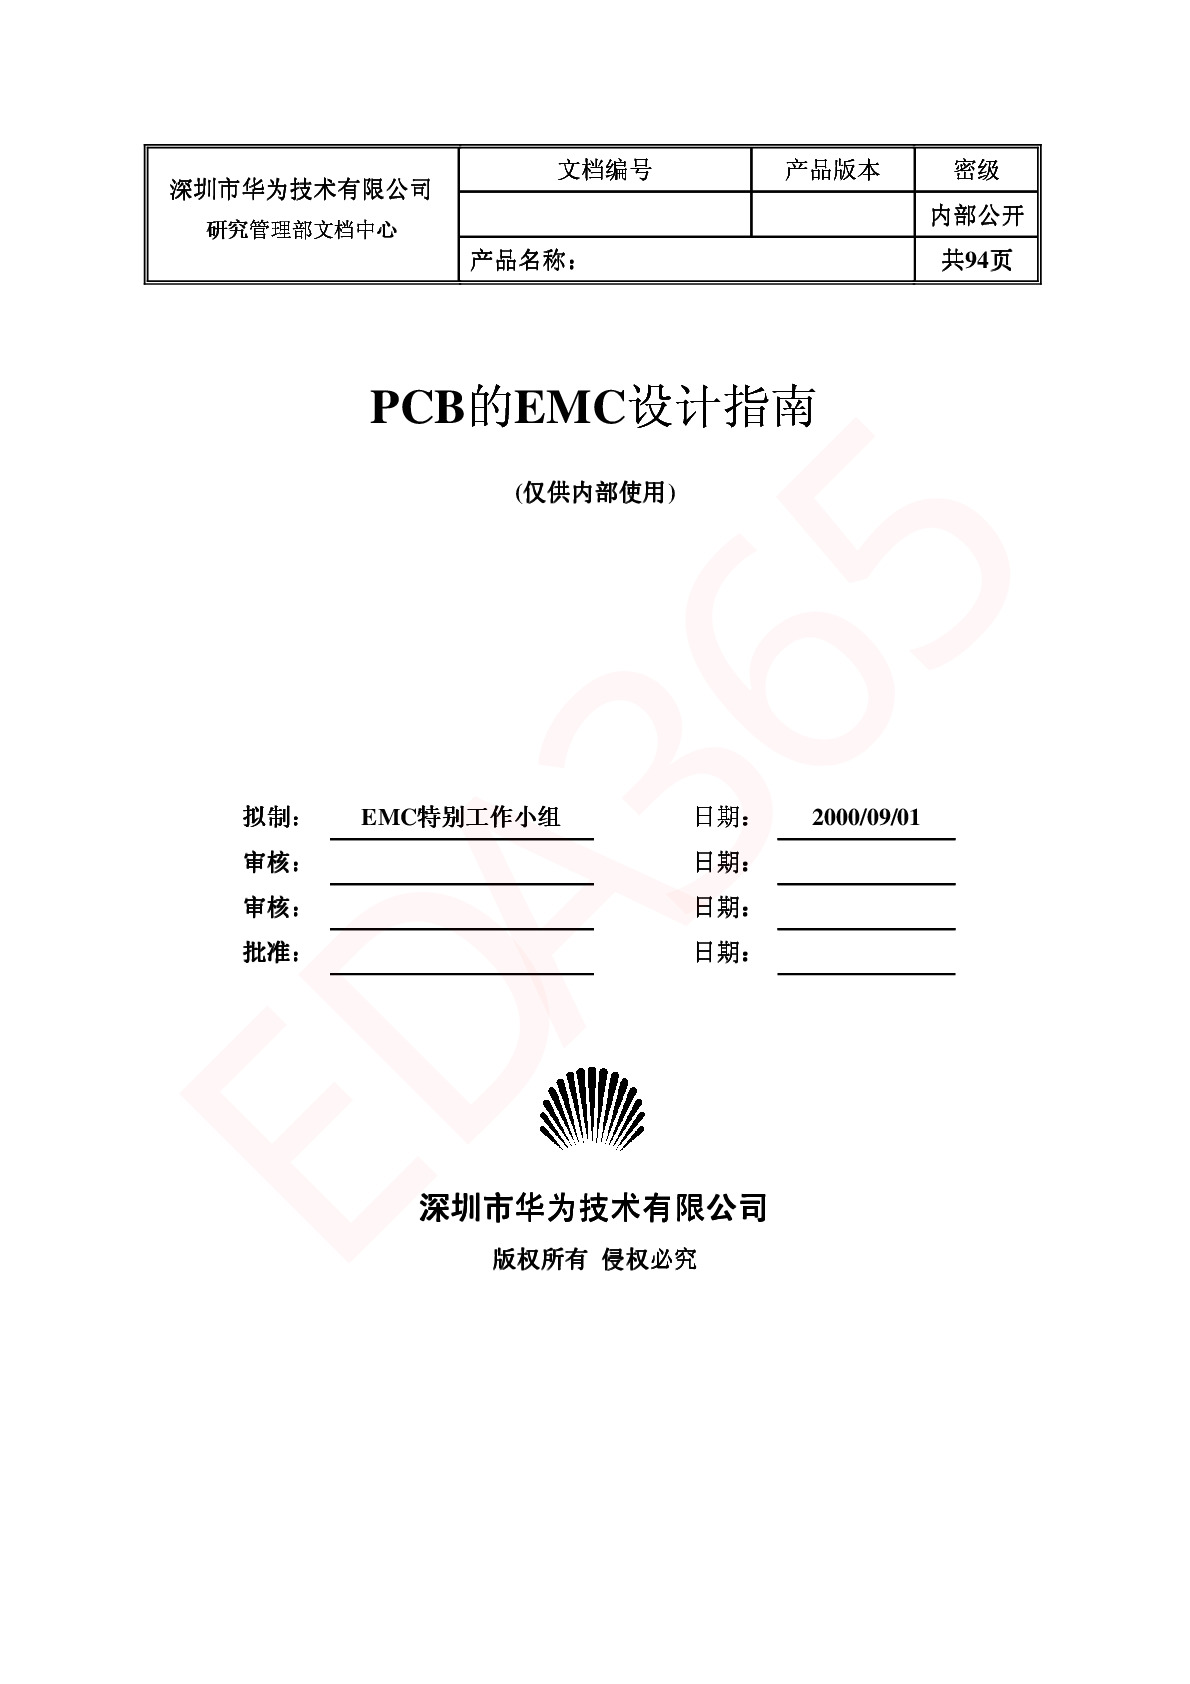 华为PCB的EMC设计指南